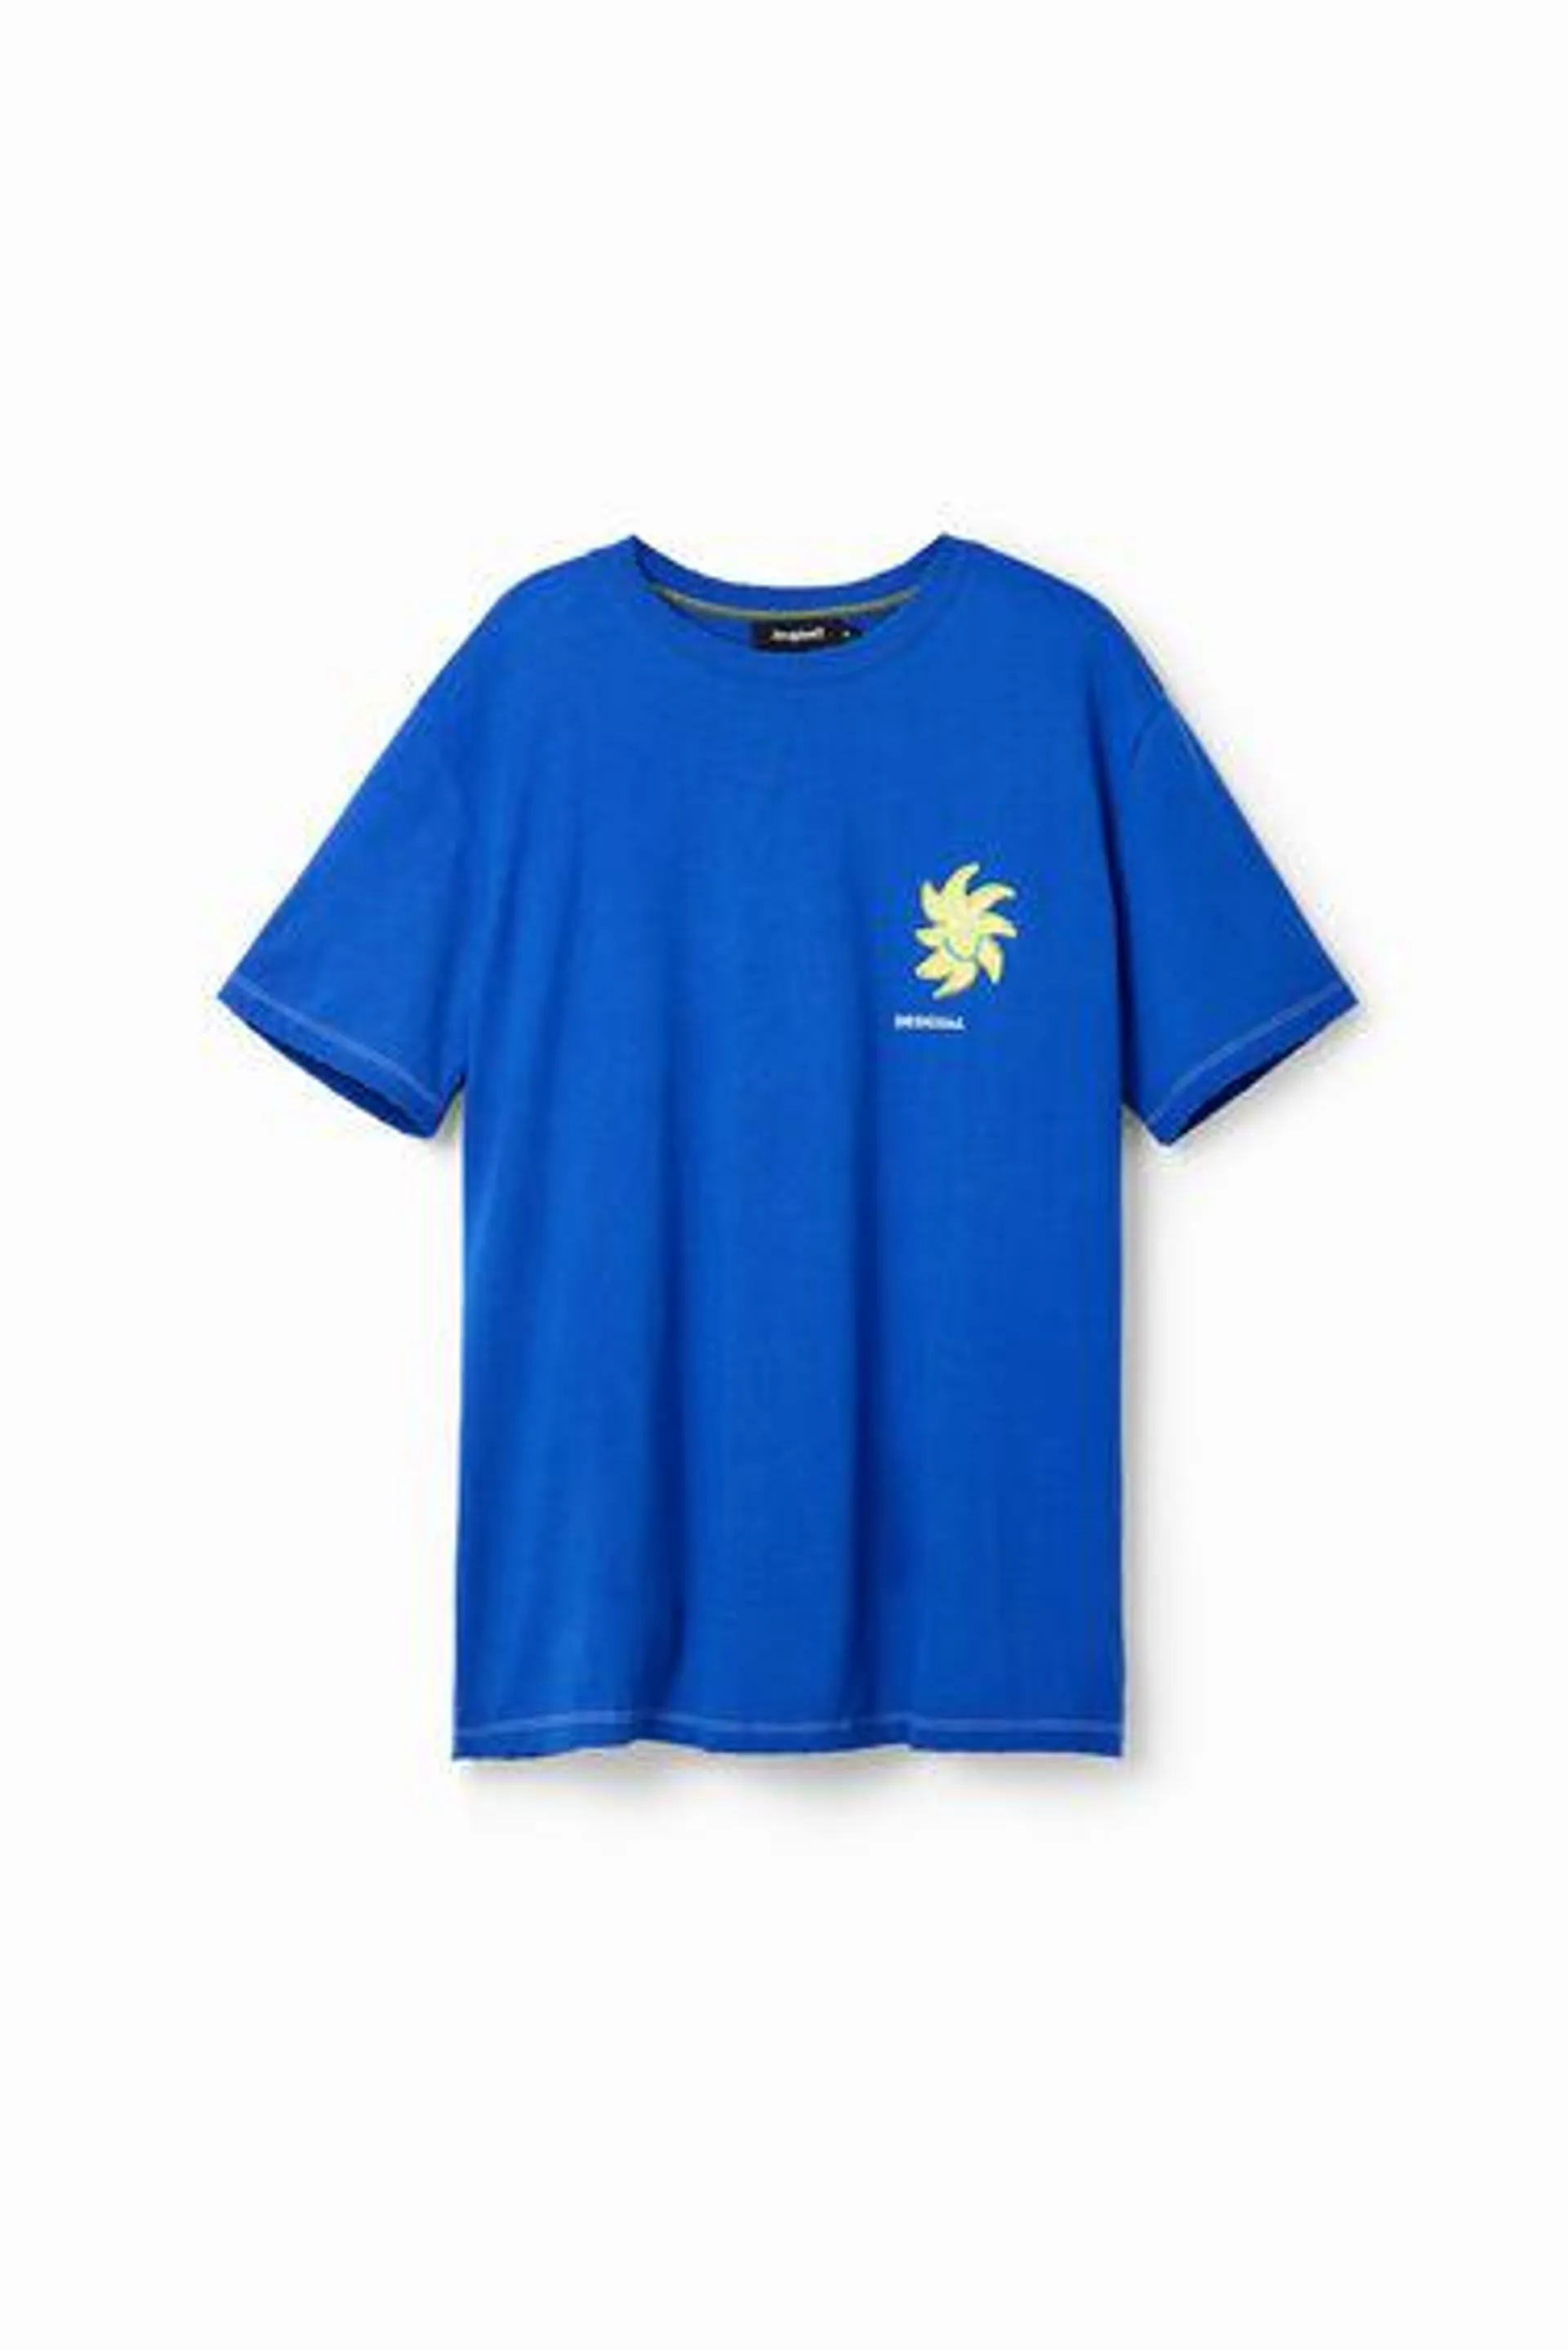 Short-sleeve sun T-shirt